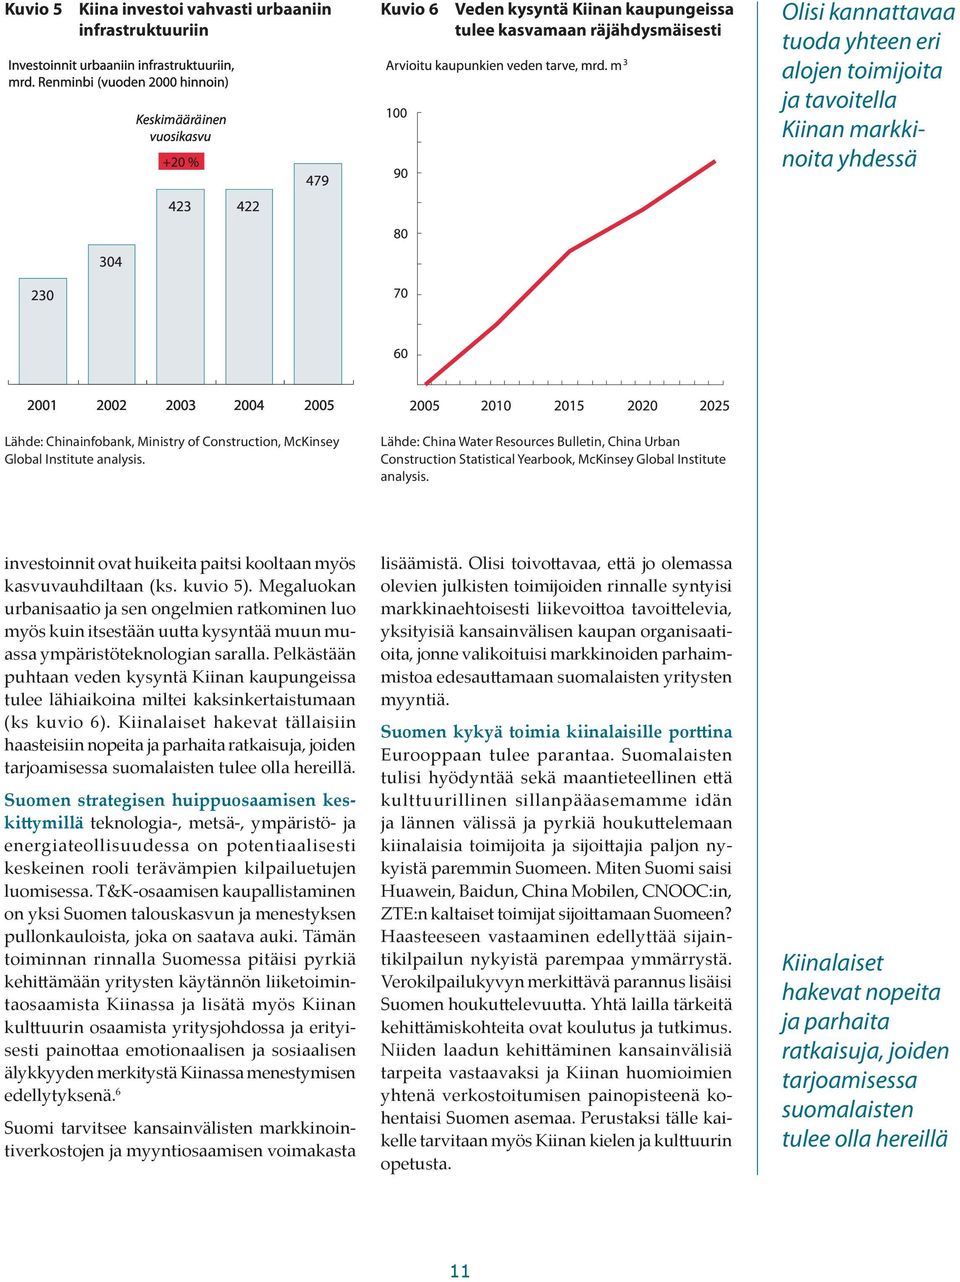 Lähde: China Water Resources Bulletin, China Urban Construction Statistical Yearbook, McKinsey Global Institute analysis. investoinnit ovat huikeita paitsi kooltaan myös kasvuvauhdiltaan (ks.